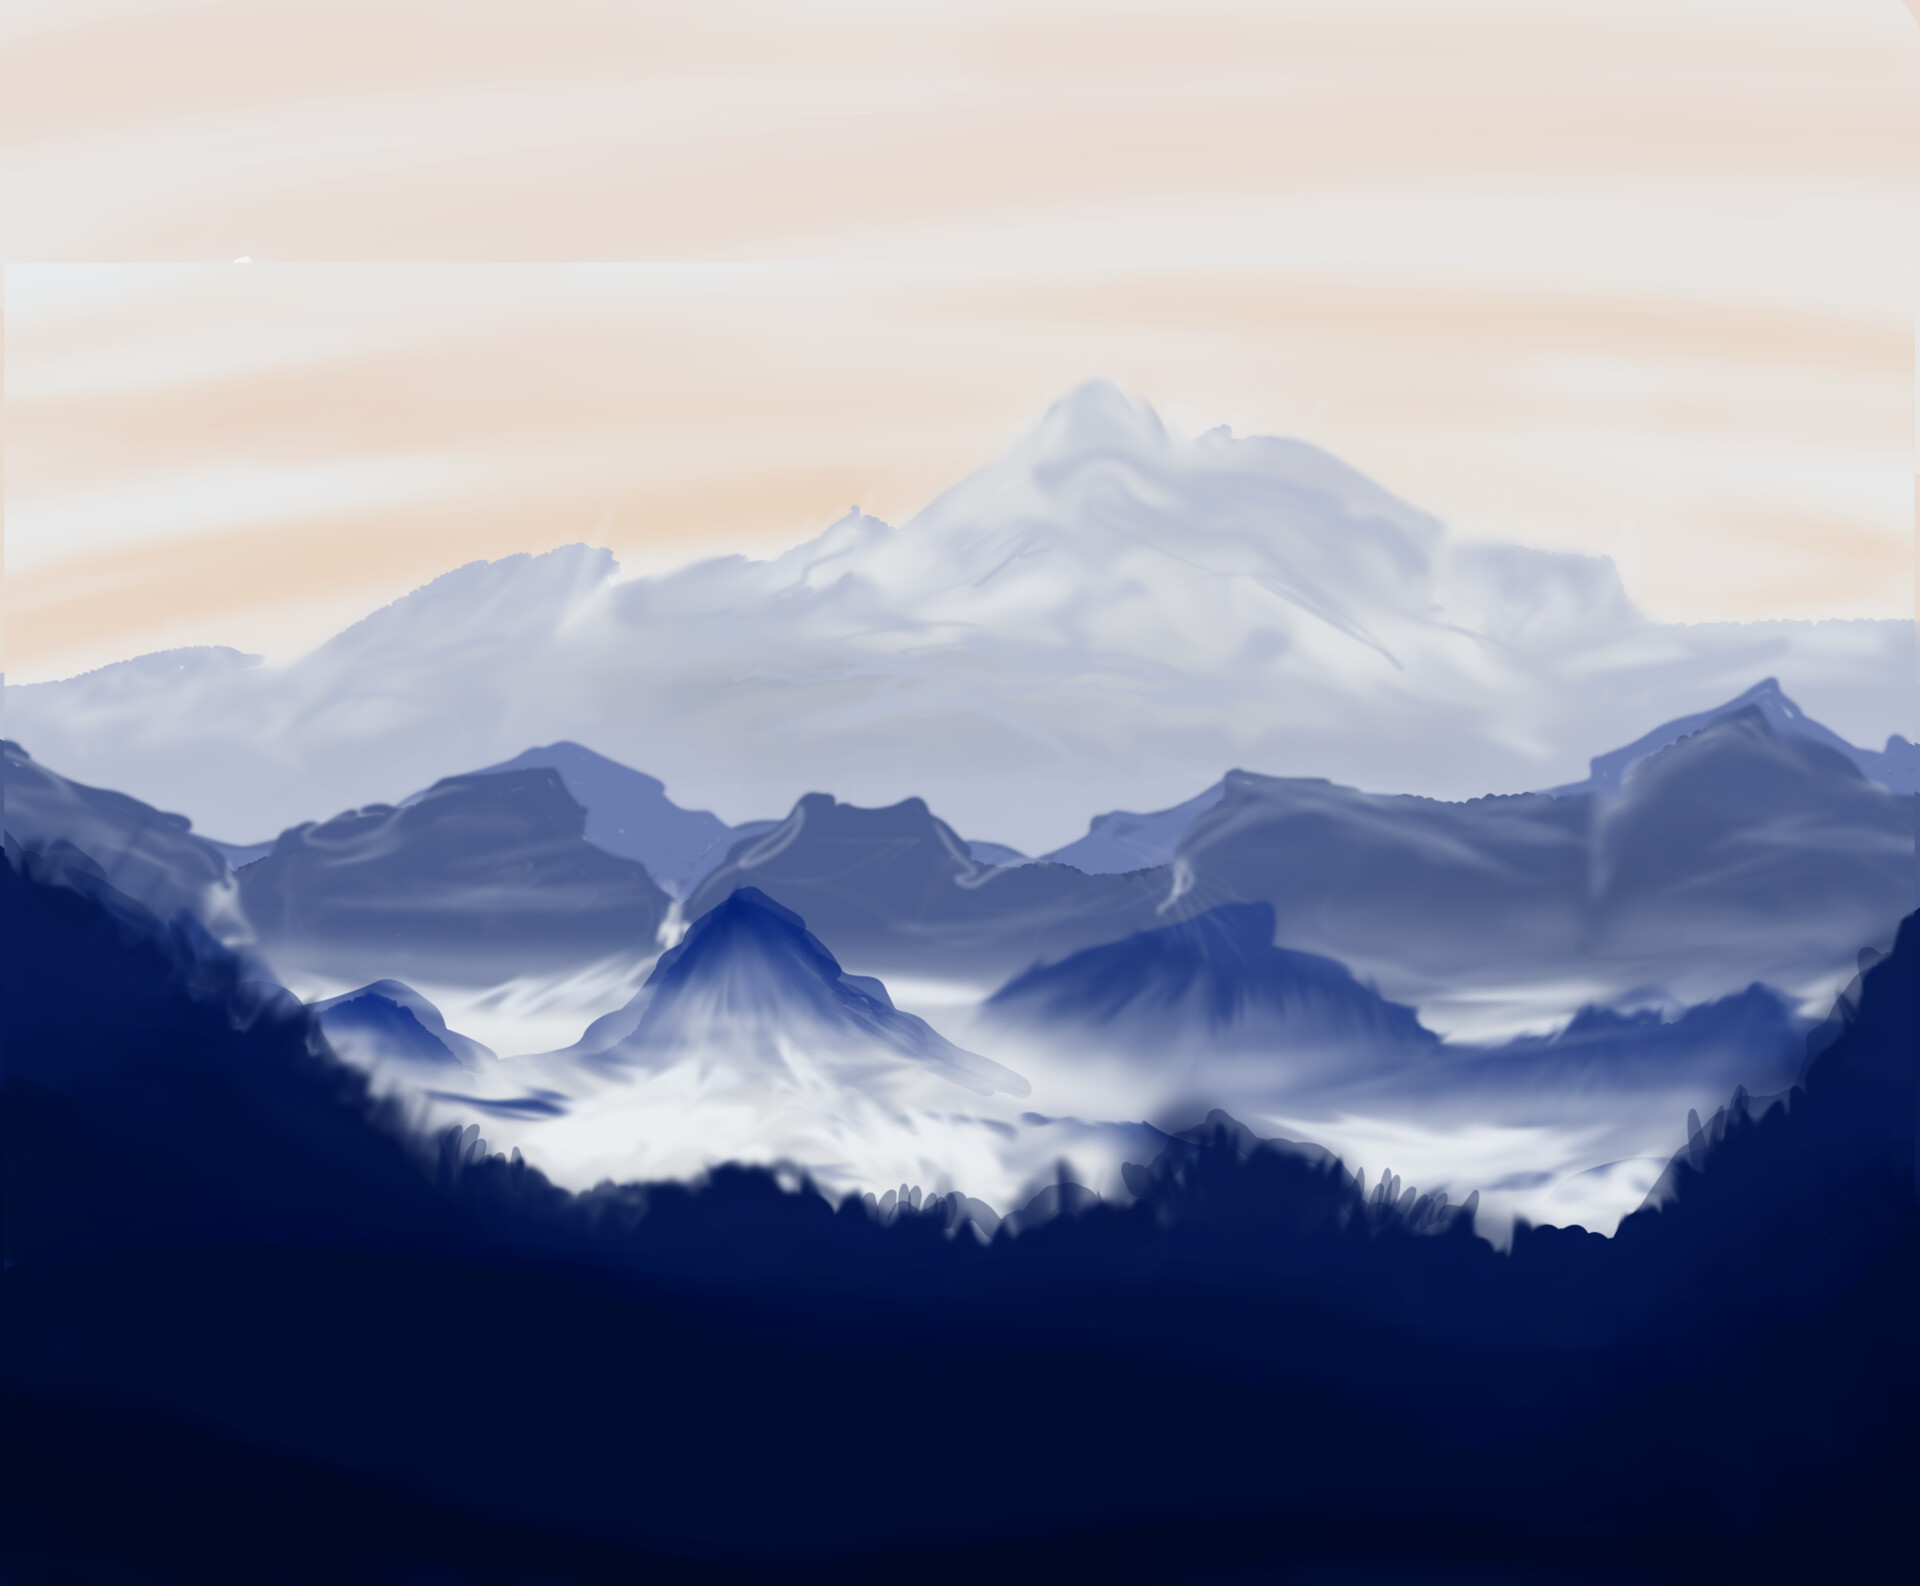 ArtStation - Mountains